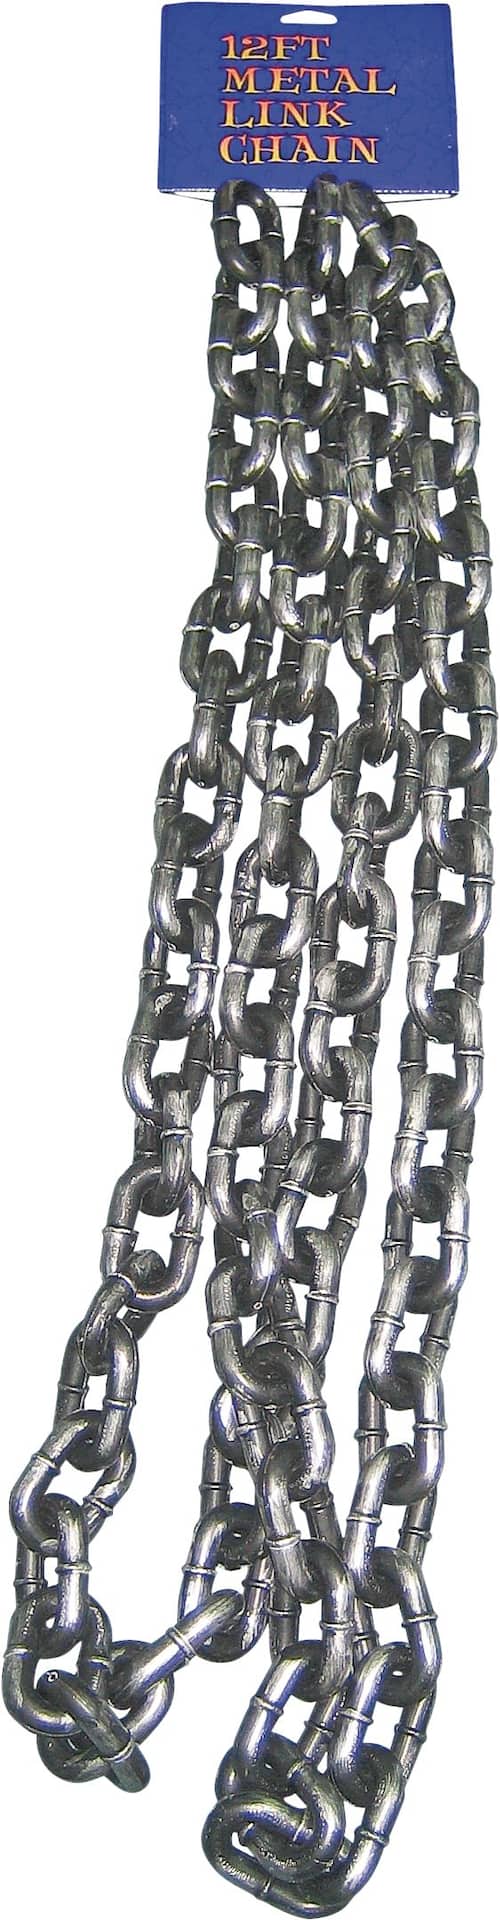 Metal Link Chain, Grey, 12-ft, Indoor/Outdoor Decoration for Halloween